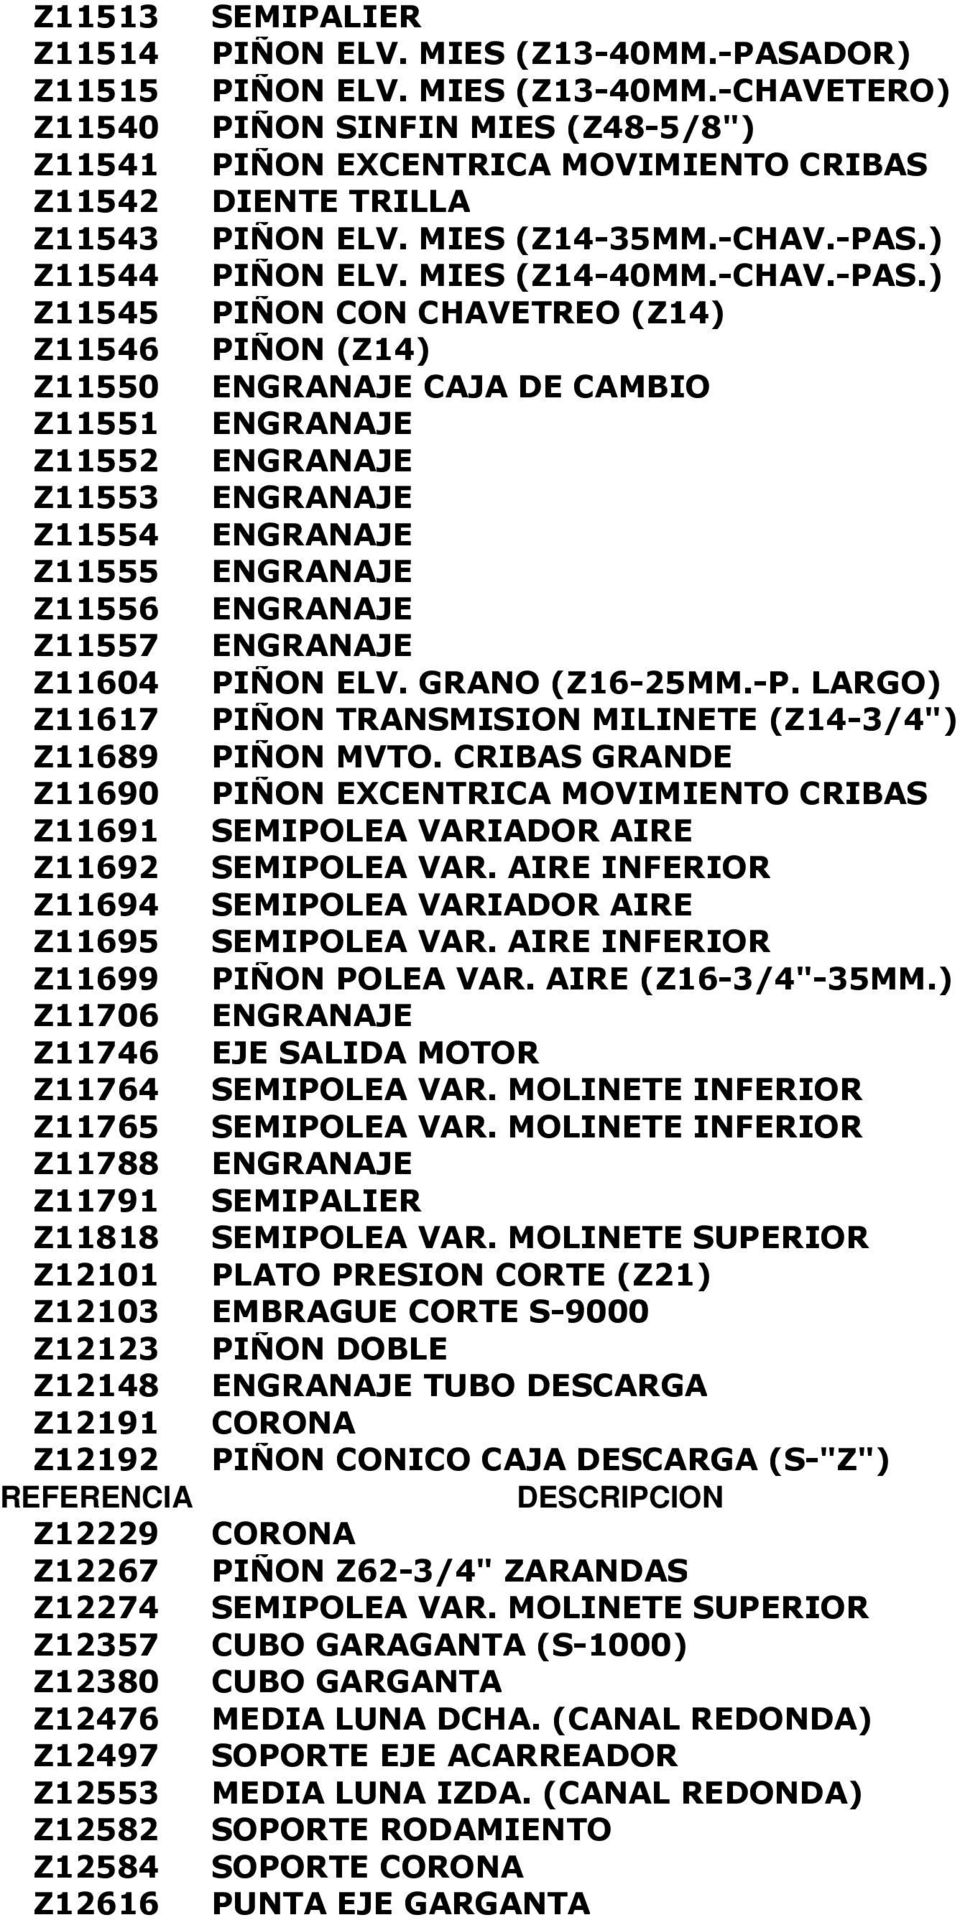 ) Z11544 PIÑON ELV. MIES (Z14-40MM.-CHAV.-PAS.